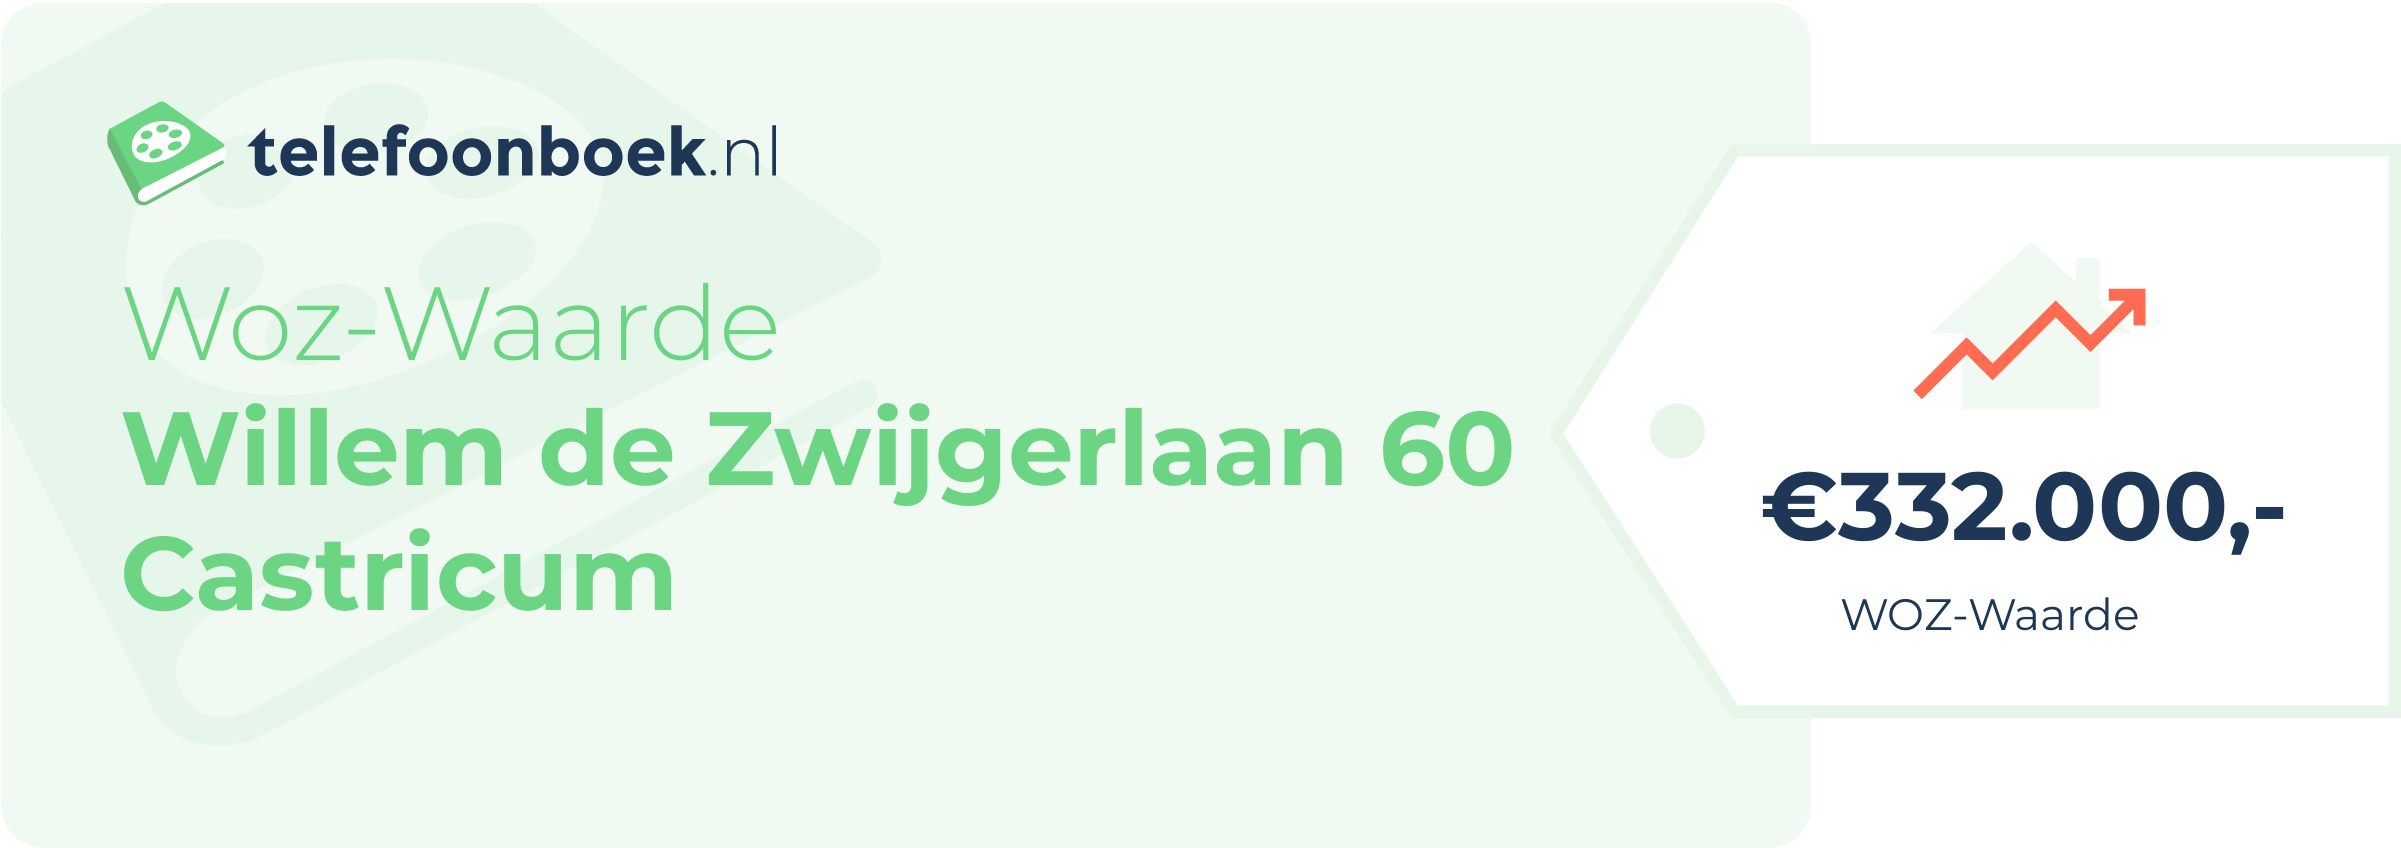 WOZ-waarde Willem De Zwijgerlaan 60 Castricum